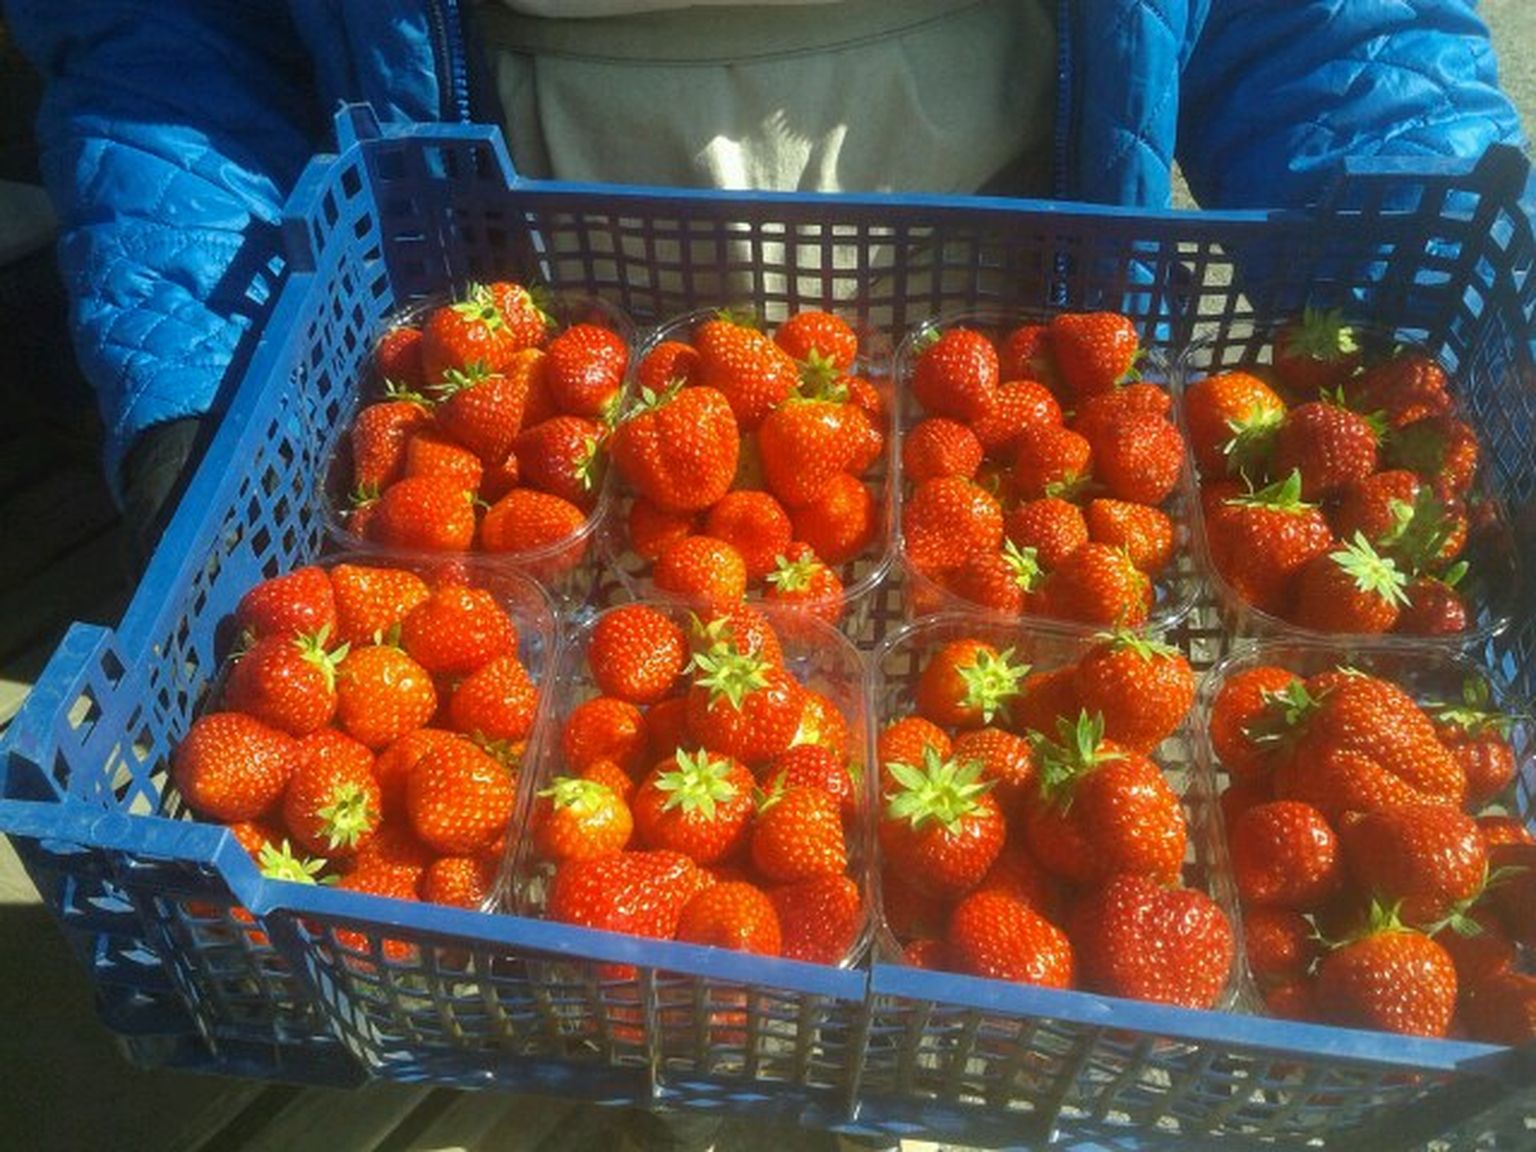 Eesti maasikad maksid Rakvere turul 16 eurot kilo.